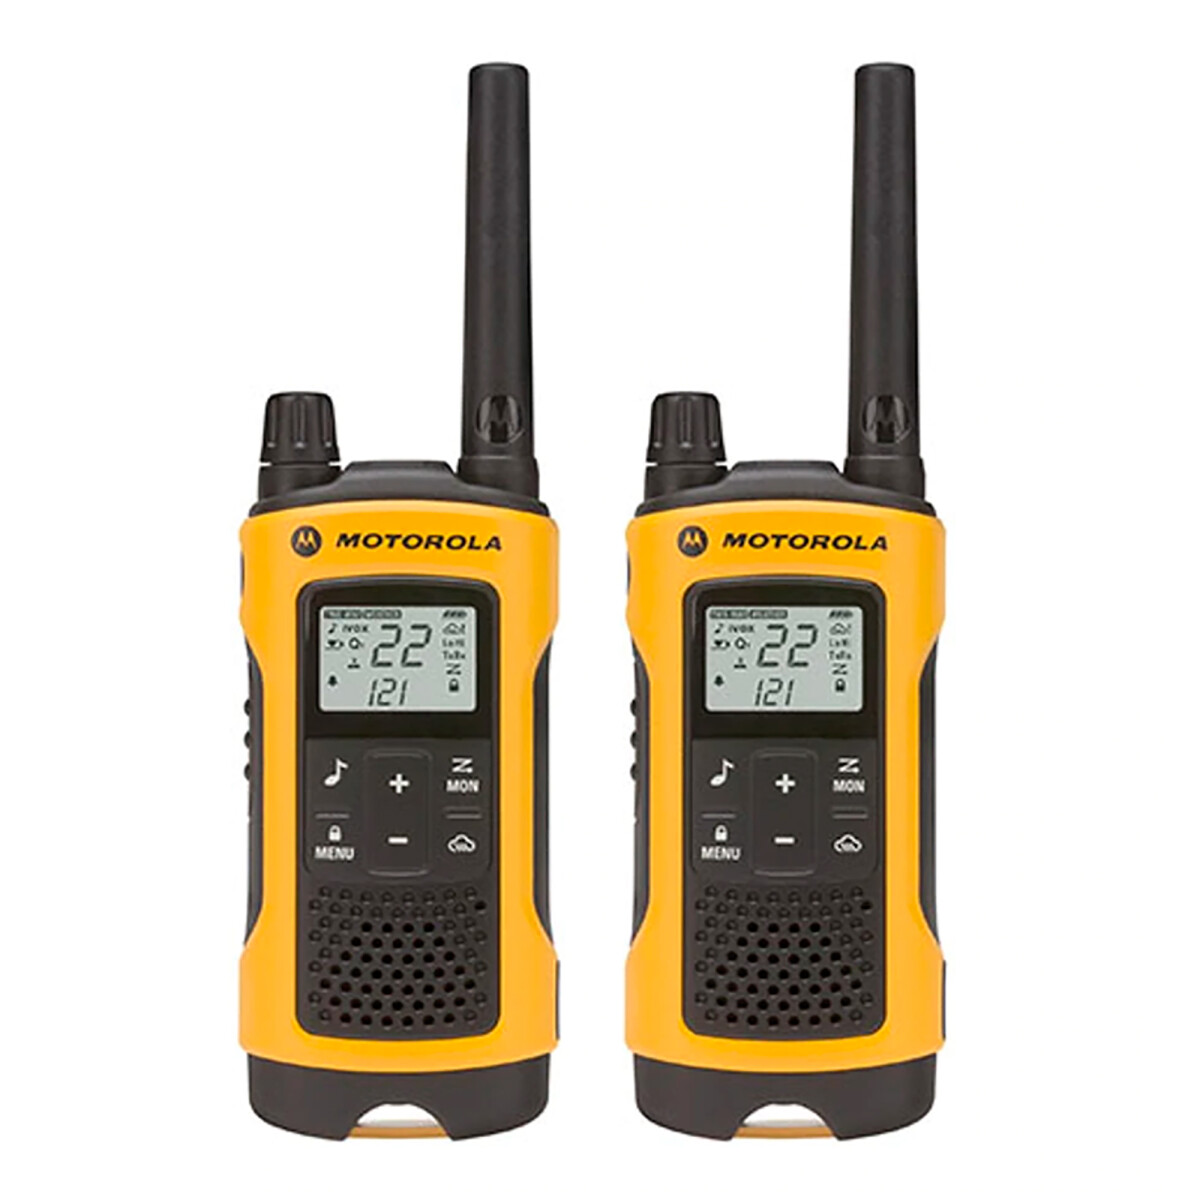 Motorola - Handy 2 Vías T402 - Alcance: 56KM. 22 Canales C/u con 121 Códigos de Privacidad Comunica - 001 